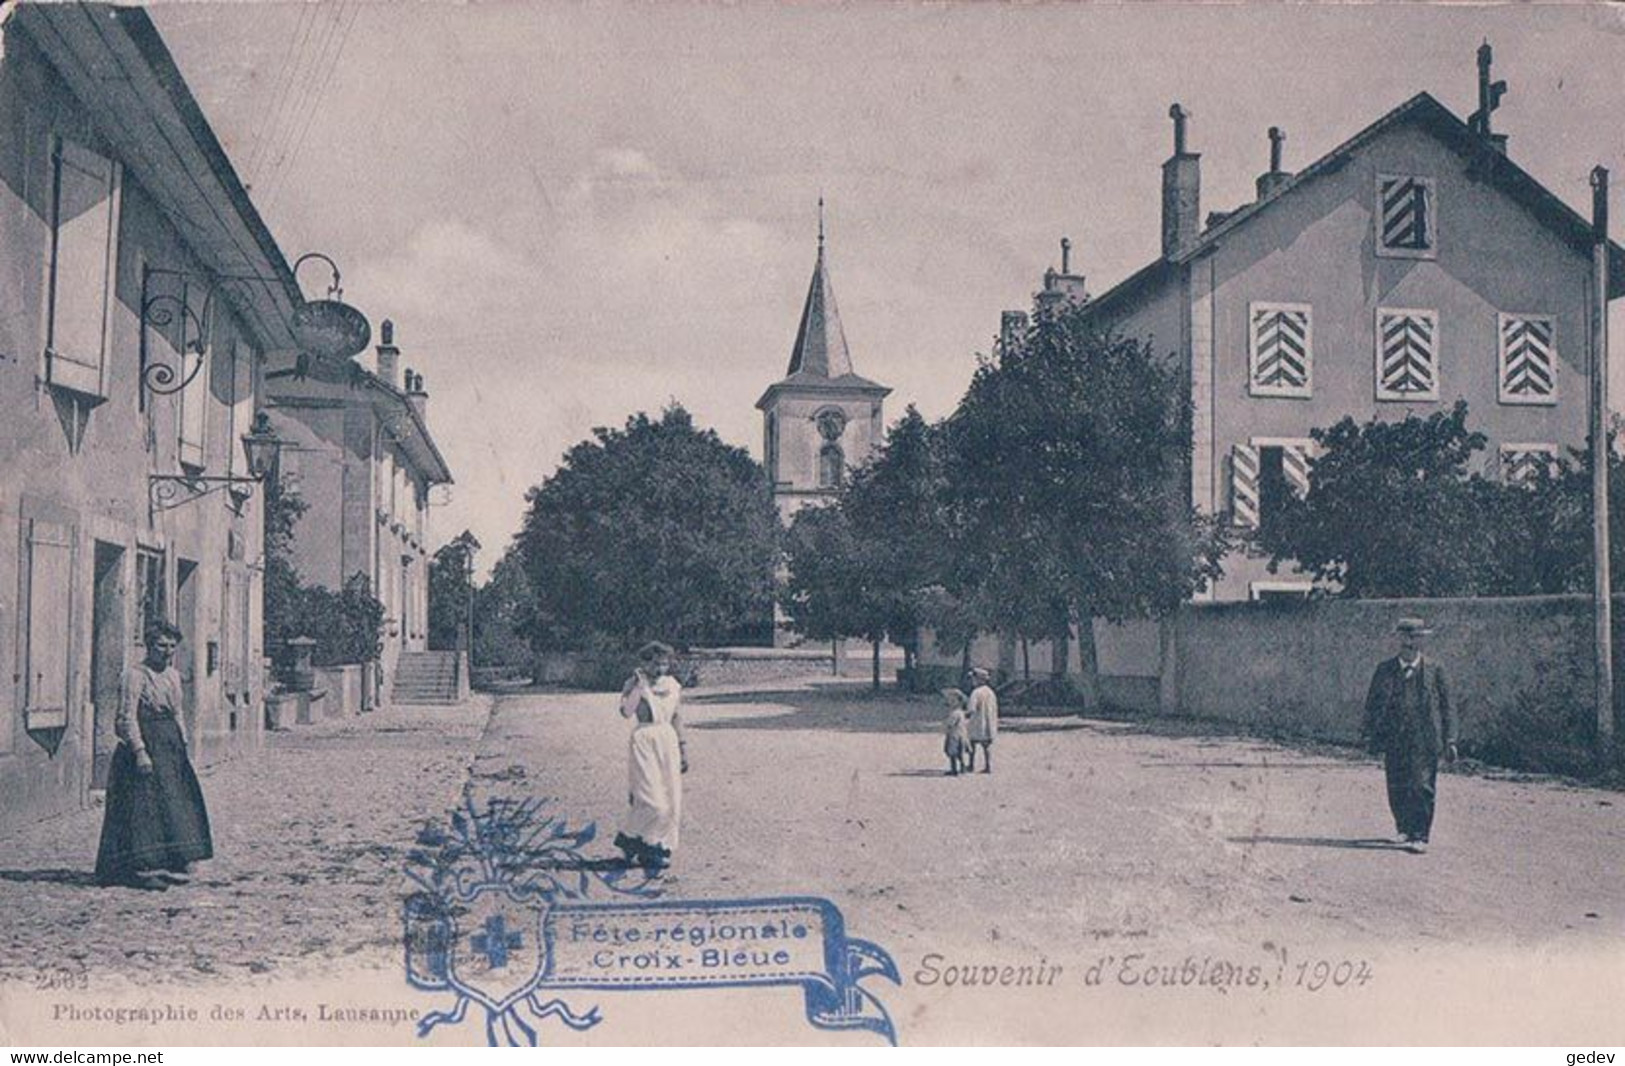 Ecublens VD 1904, Tampon Fête Régionale De La Croix Bleue (8.9.1904) - Écublens